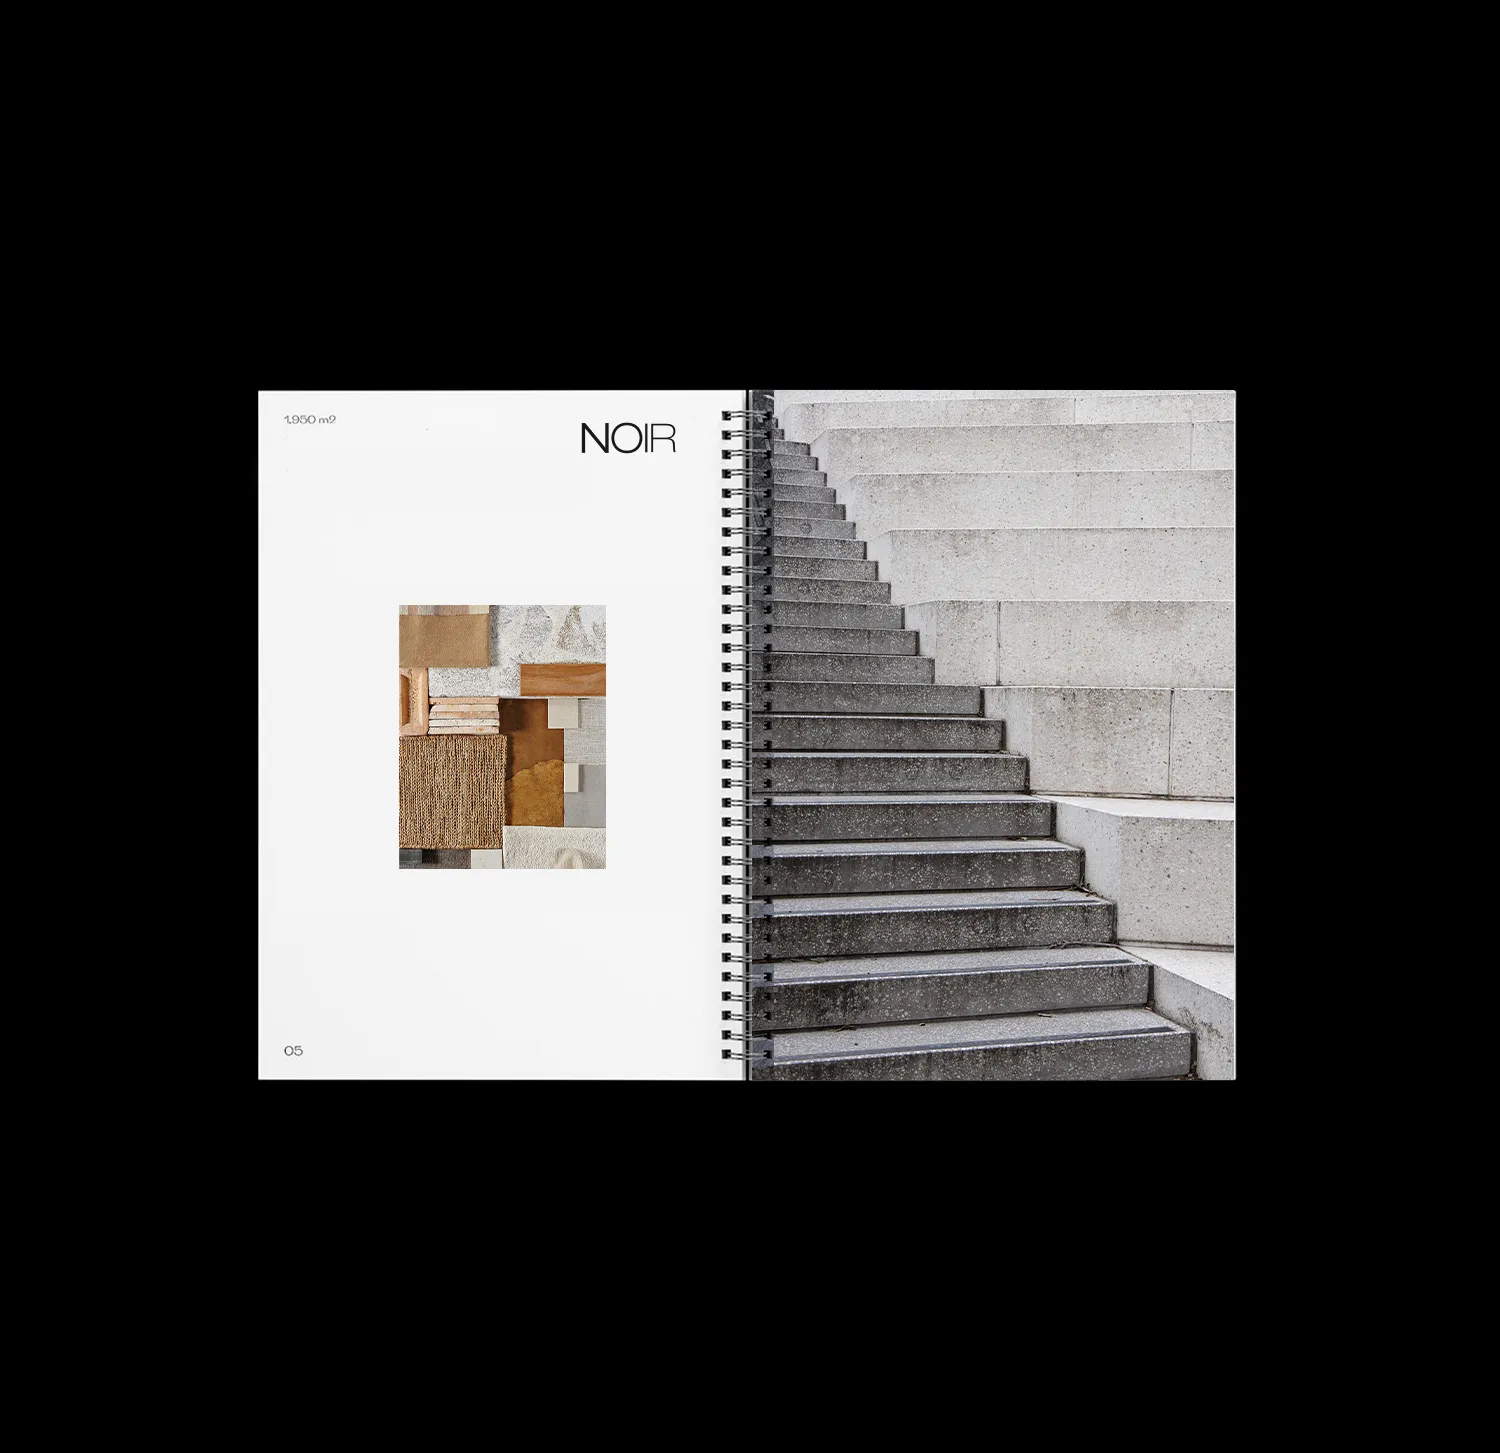 Catálogo com moodboard de arquitetaura de um lado e foto de uma escada do outro sobre fundo preto